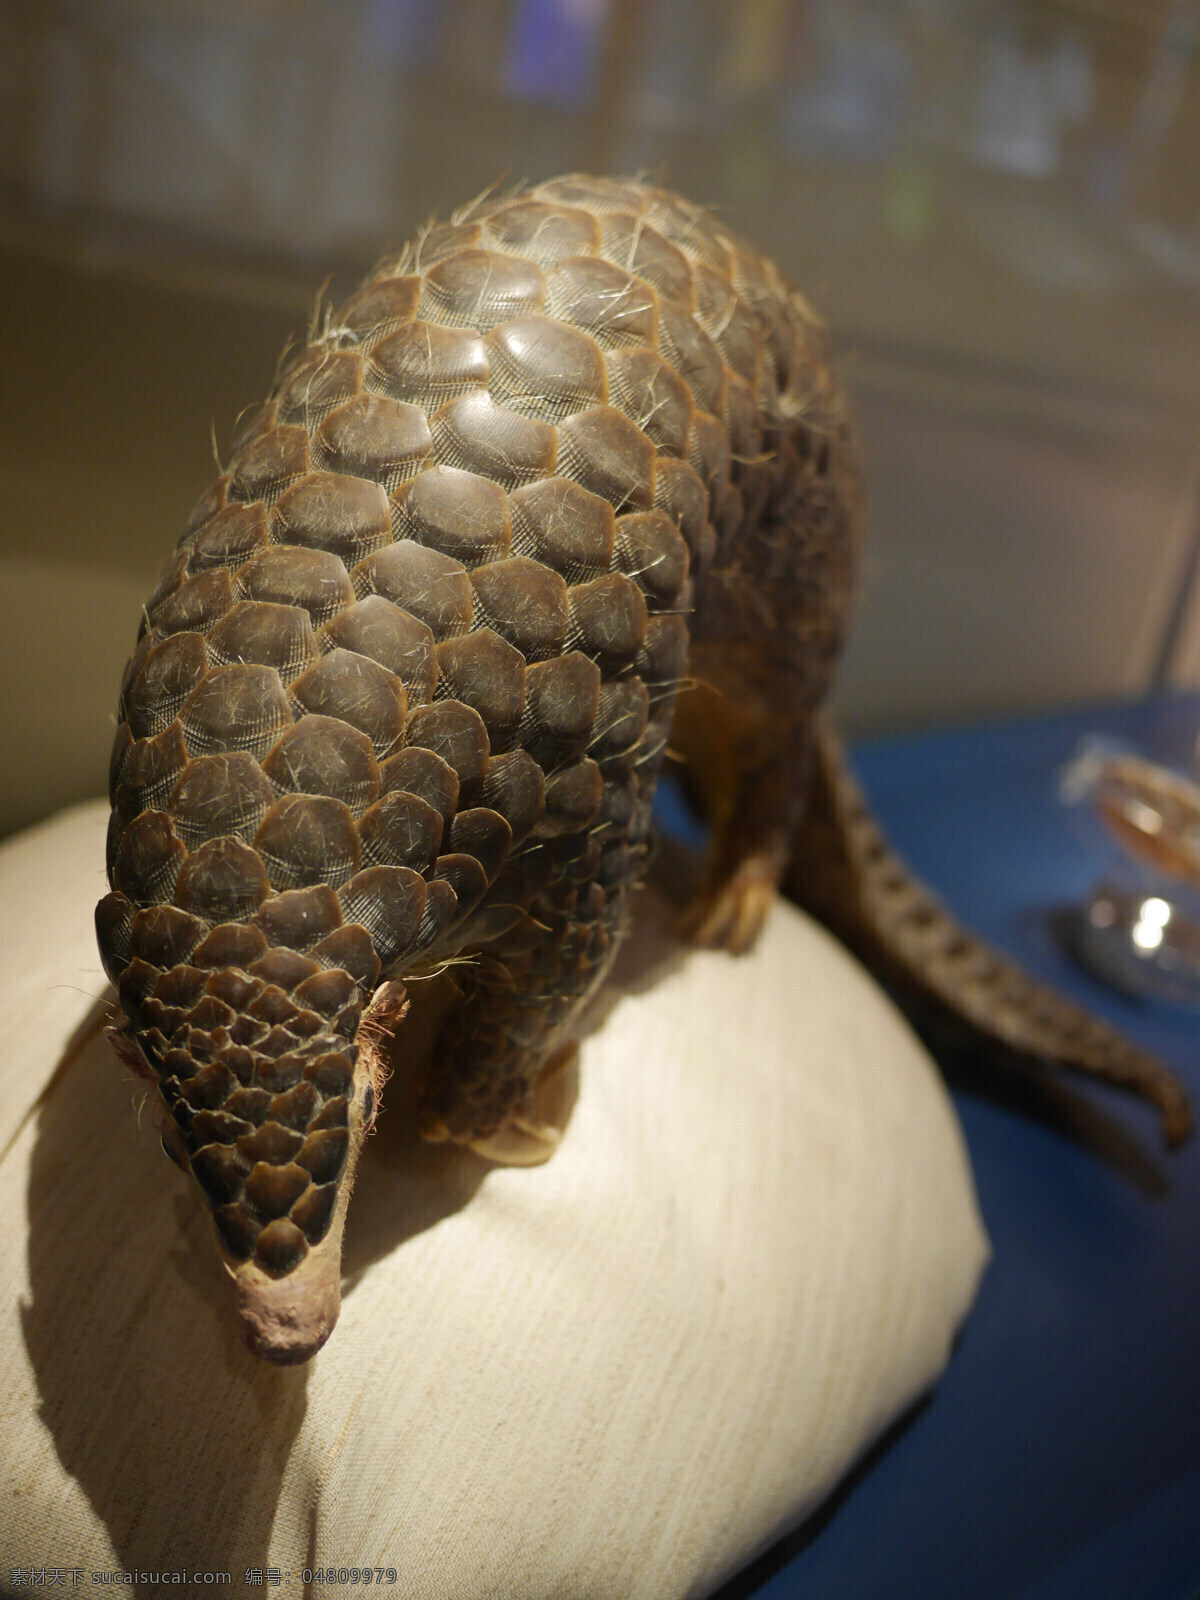 穿山甲动物 模型 硬 动物 历史 遗迹 化石 展览 咖啡色 尾巴 生物世界 野生动物